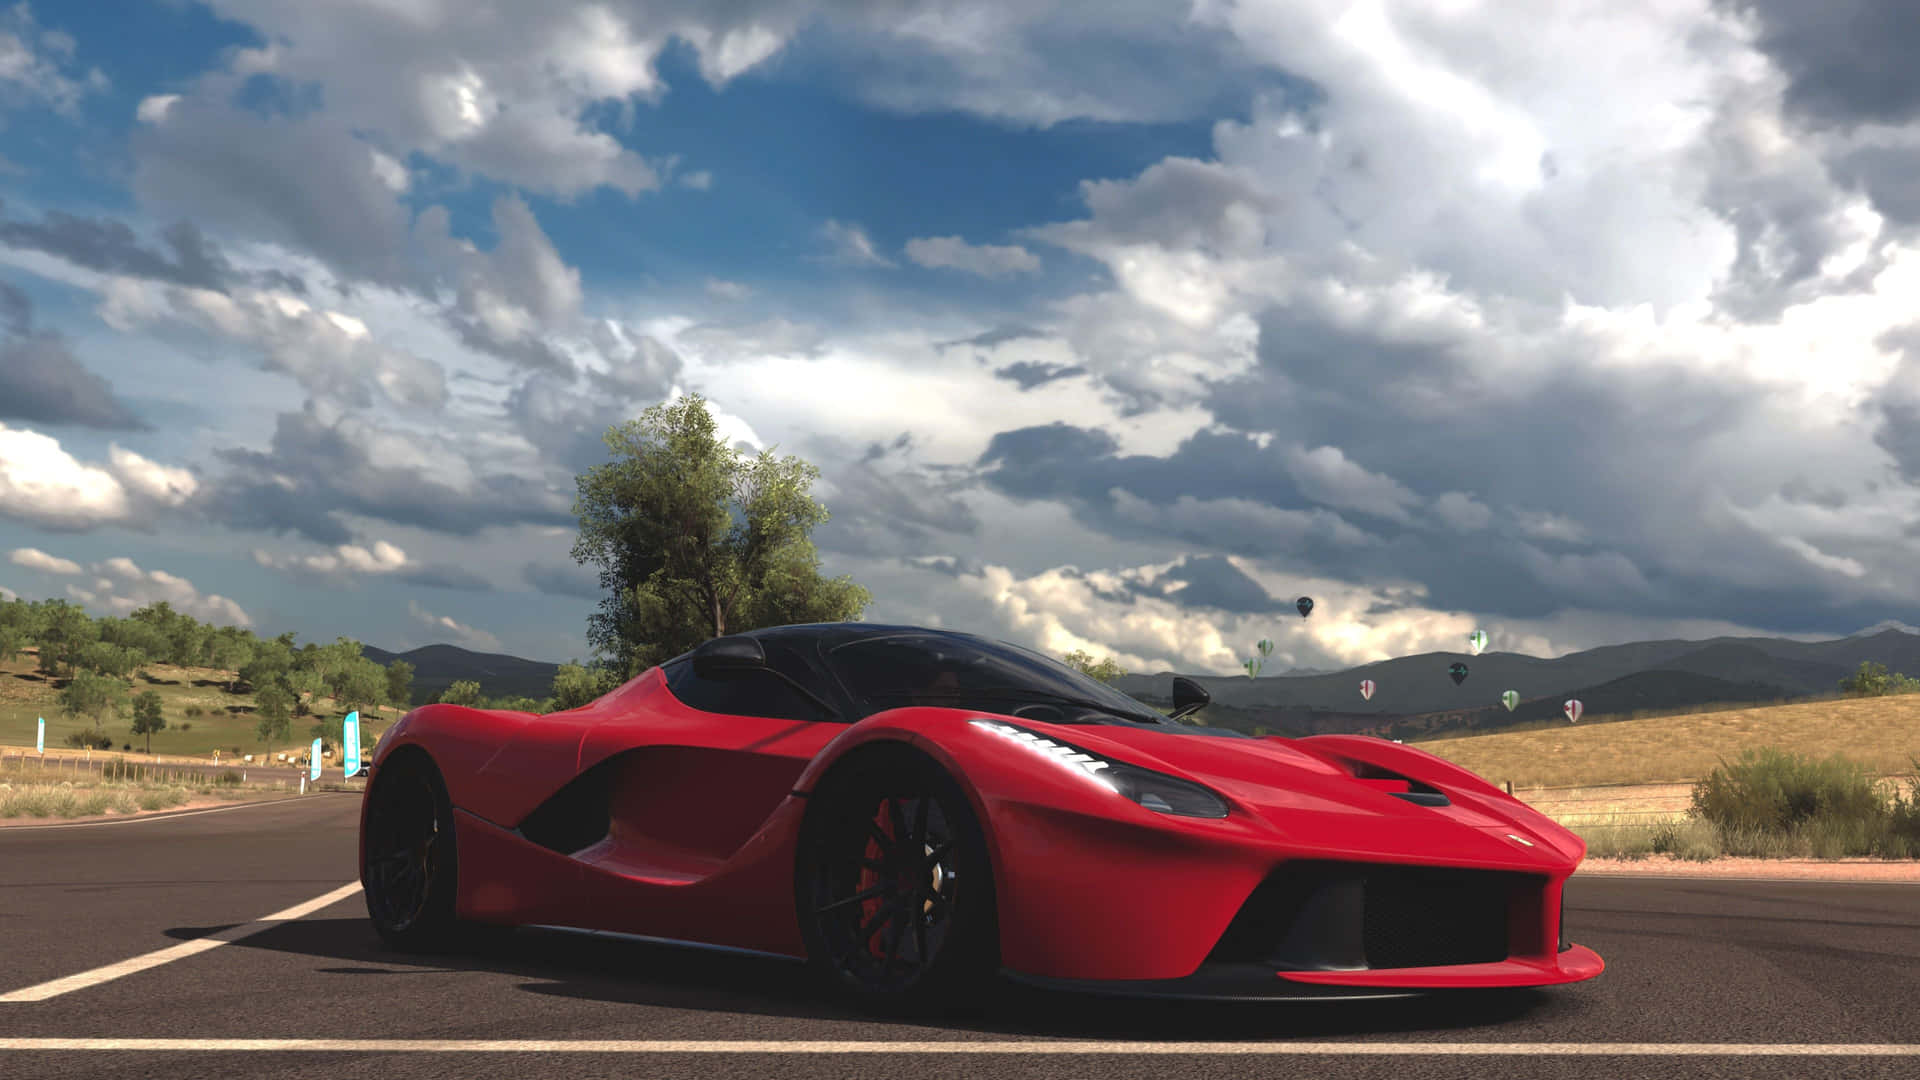 Unarealizzazione Di Un Sogno Per Gli Amanti Di Ferrari: La Magnifica Ferrari 4k